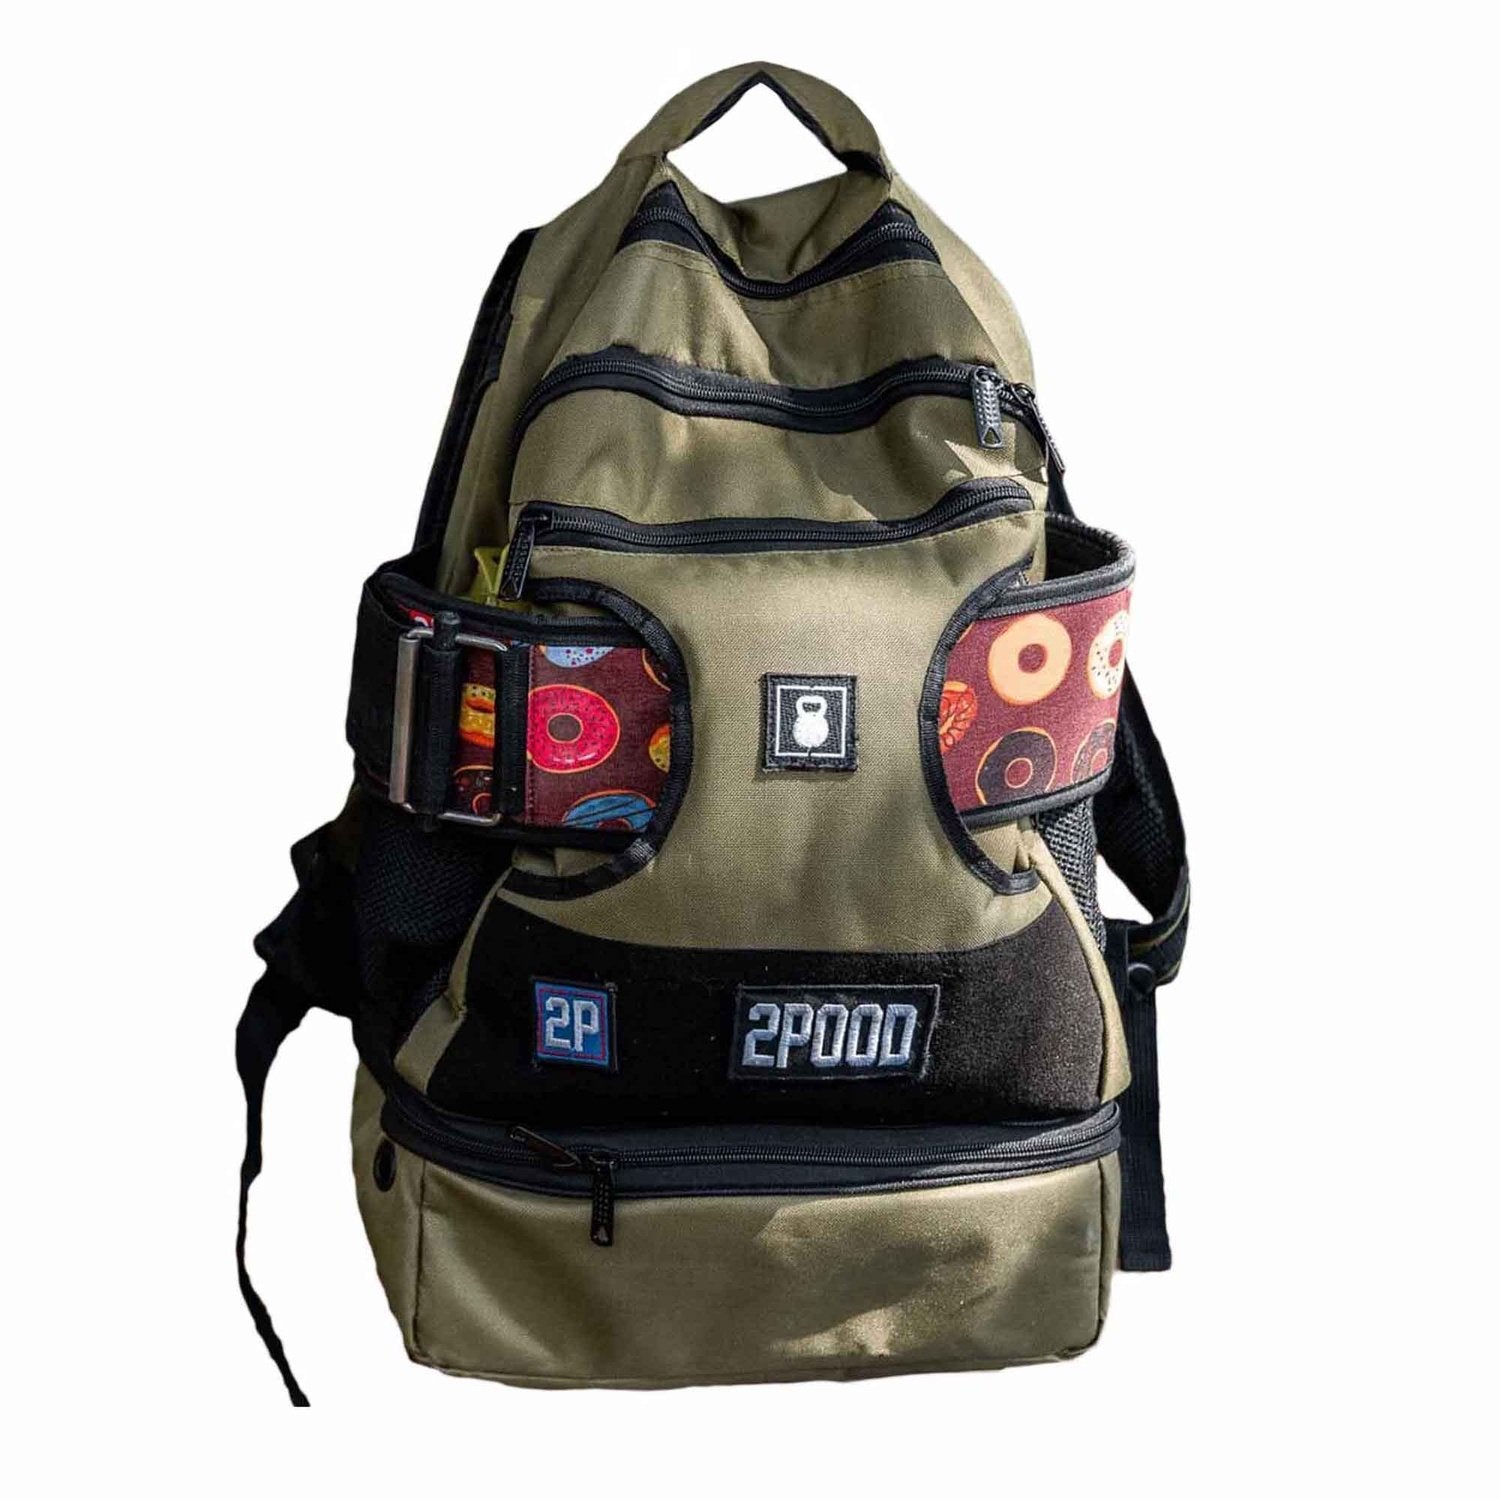 2POOD 2POOD Performance Backpack (Regular) mit Gürtelfach (Auslaufmodell) Olive kaufen bei HighPowered.ch